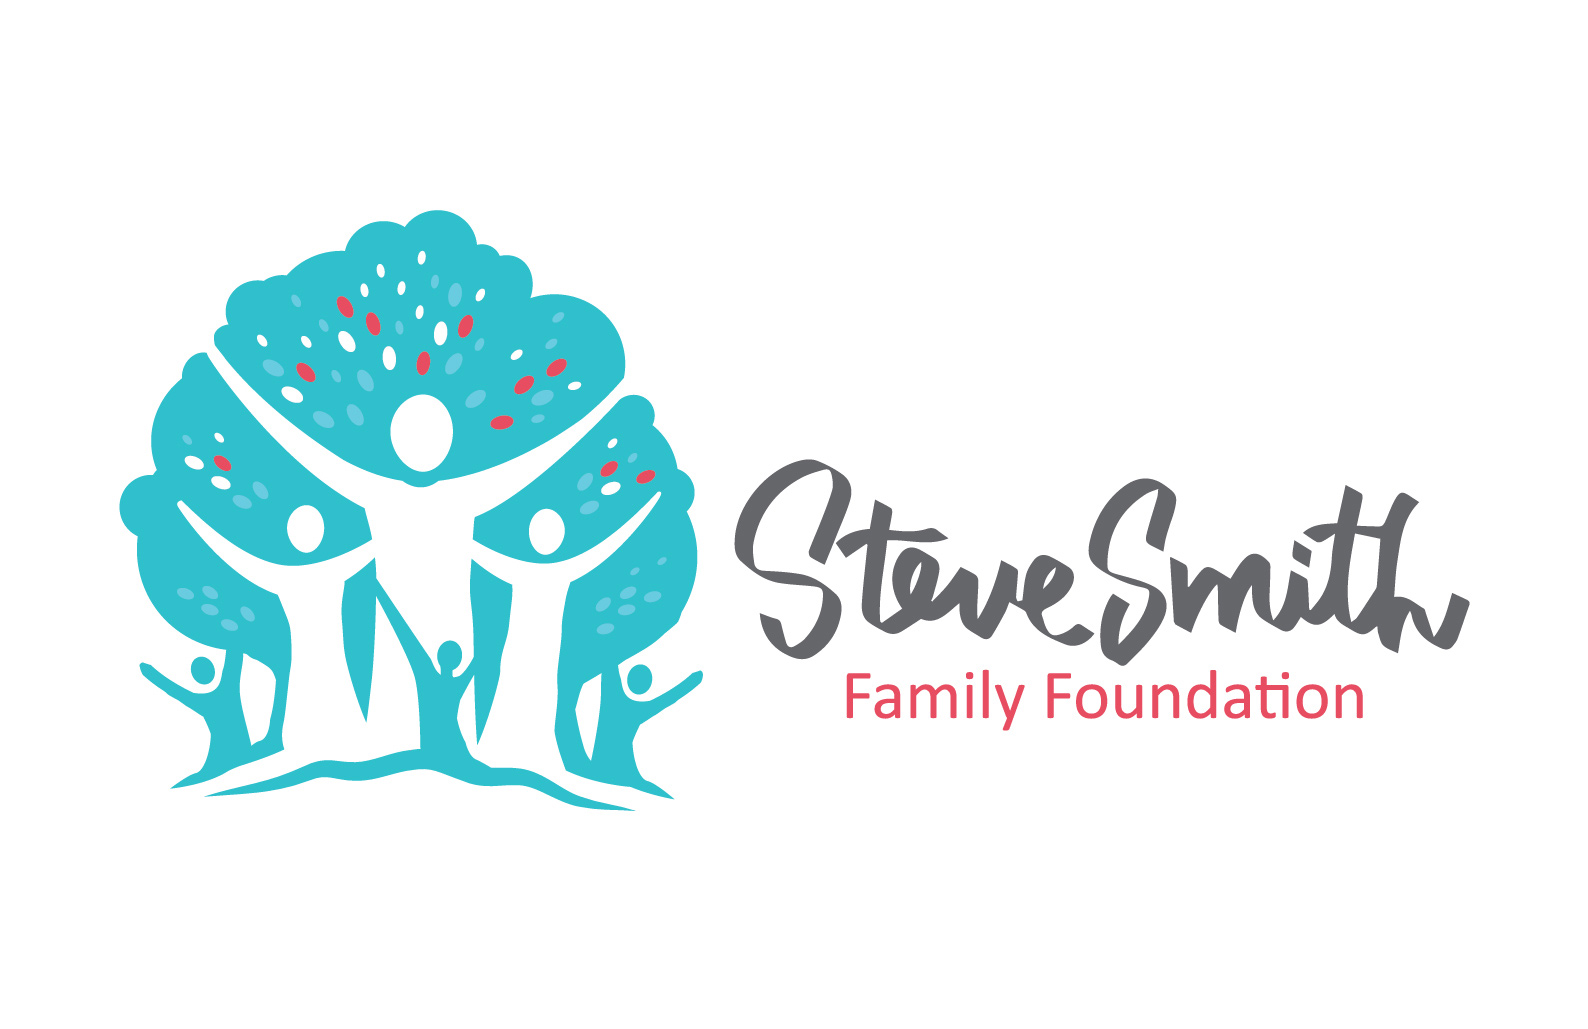 Steve Smith Charity Foundation